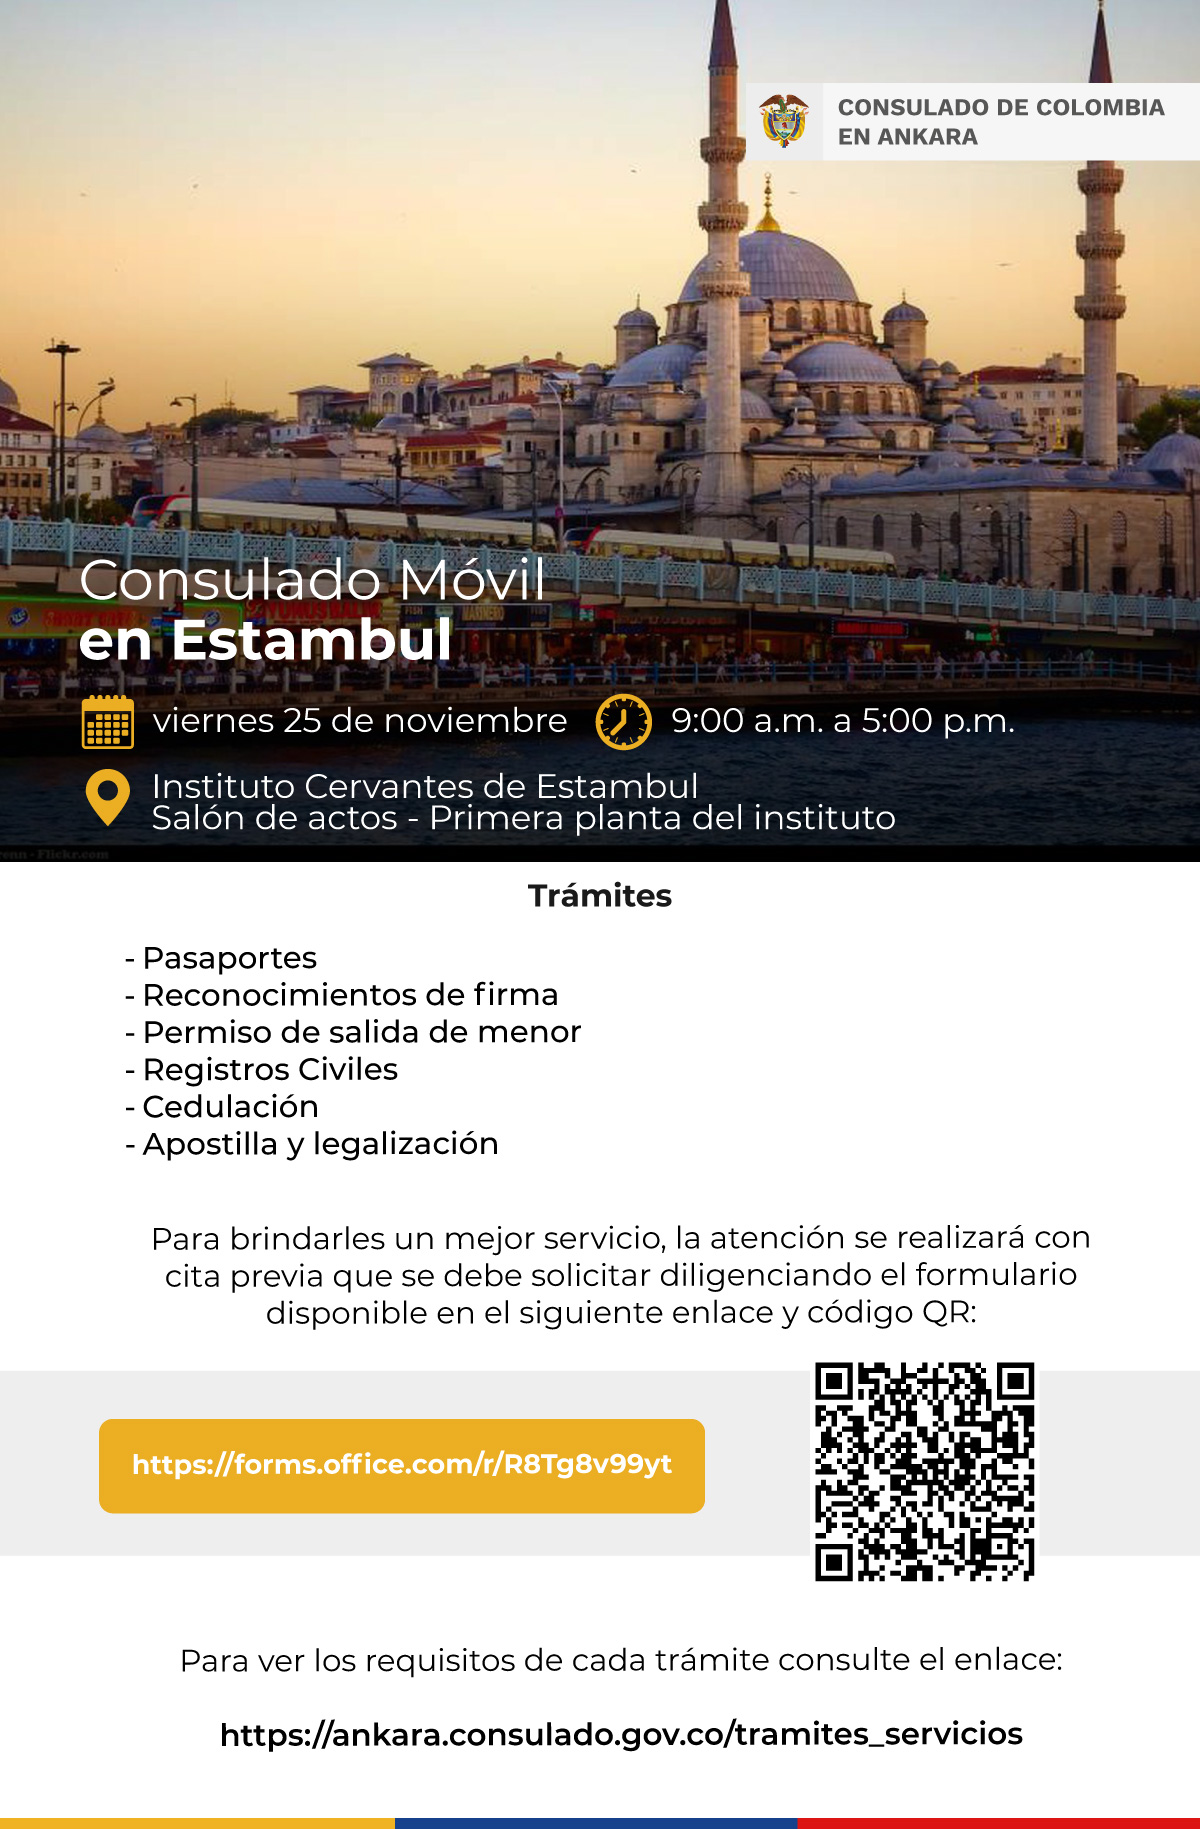 Consulado Móvil programado para el viernes 25 de noviembre de 2022 en Estambul